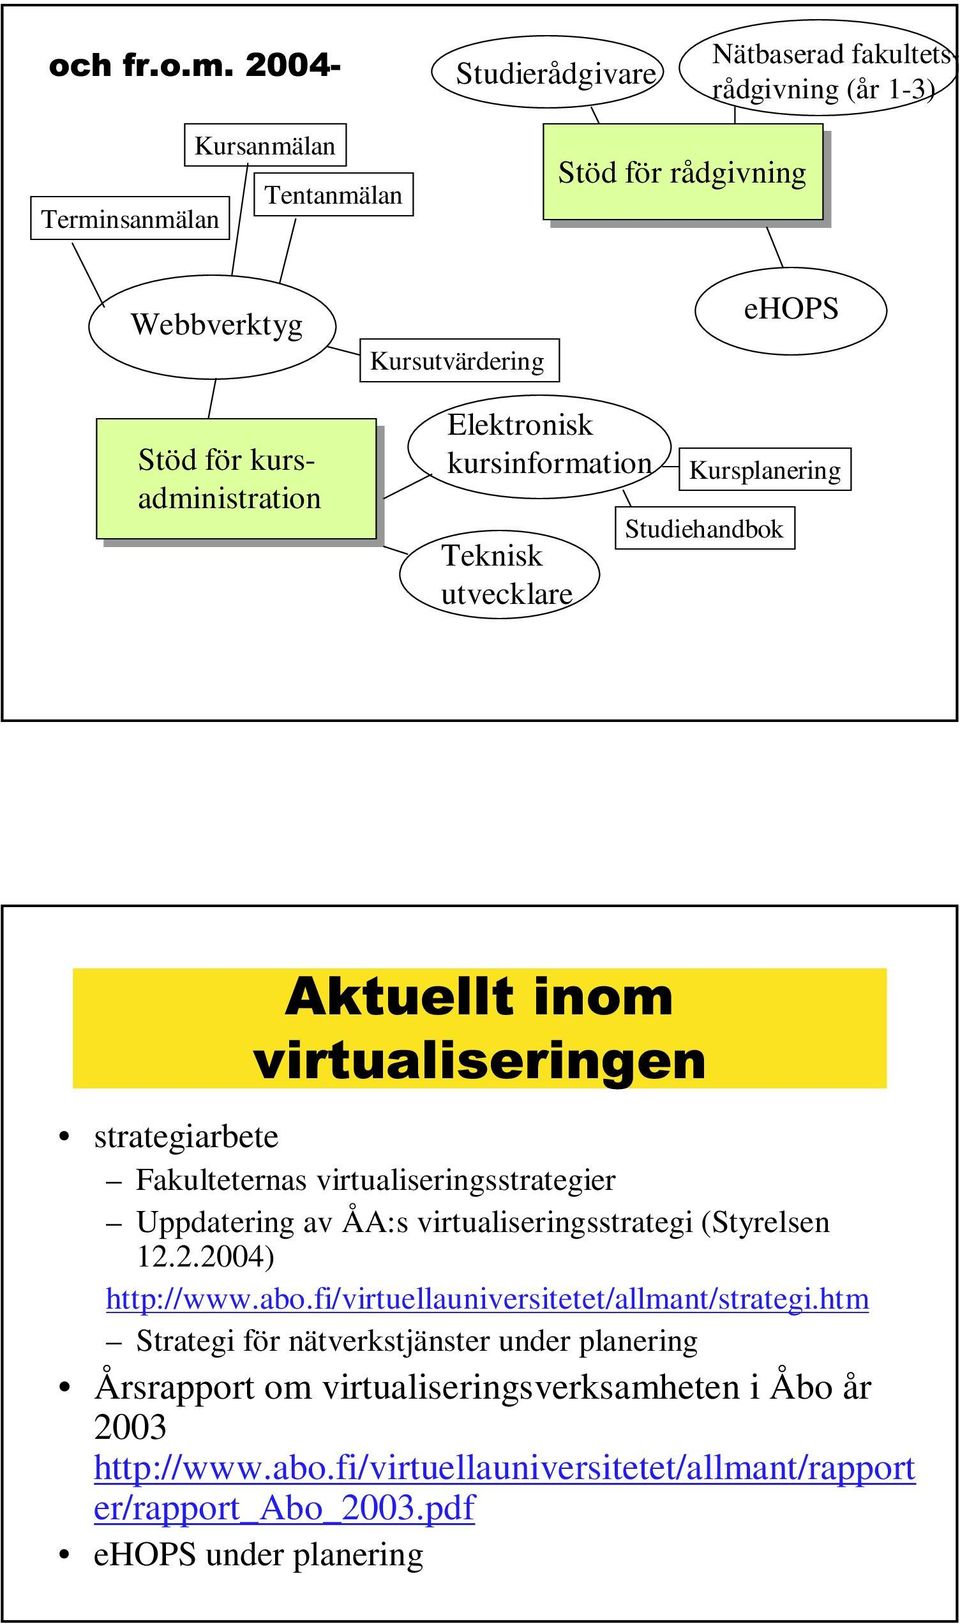 Uppdatering av ÅA:s virtualiseringsstrategi (Styrelsen 12.2.2004) http://www.abo.fi/virtuellauniversitetet/allmant/strategi.